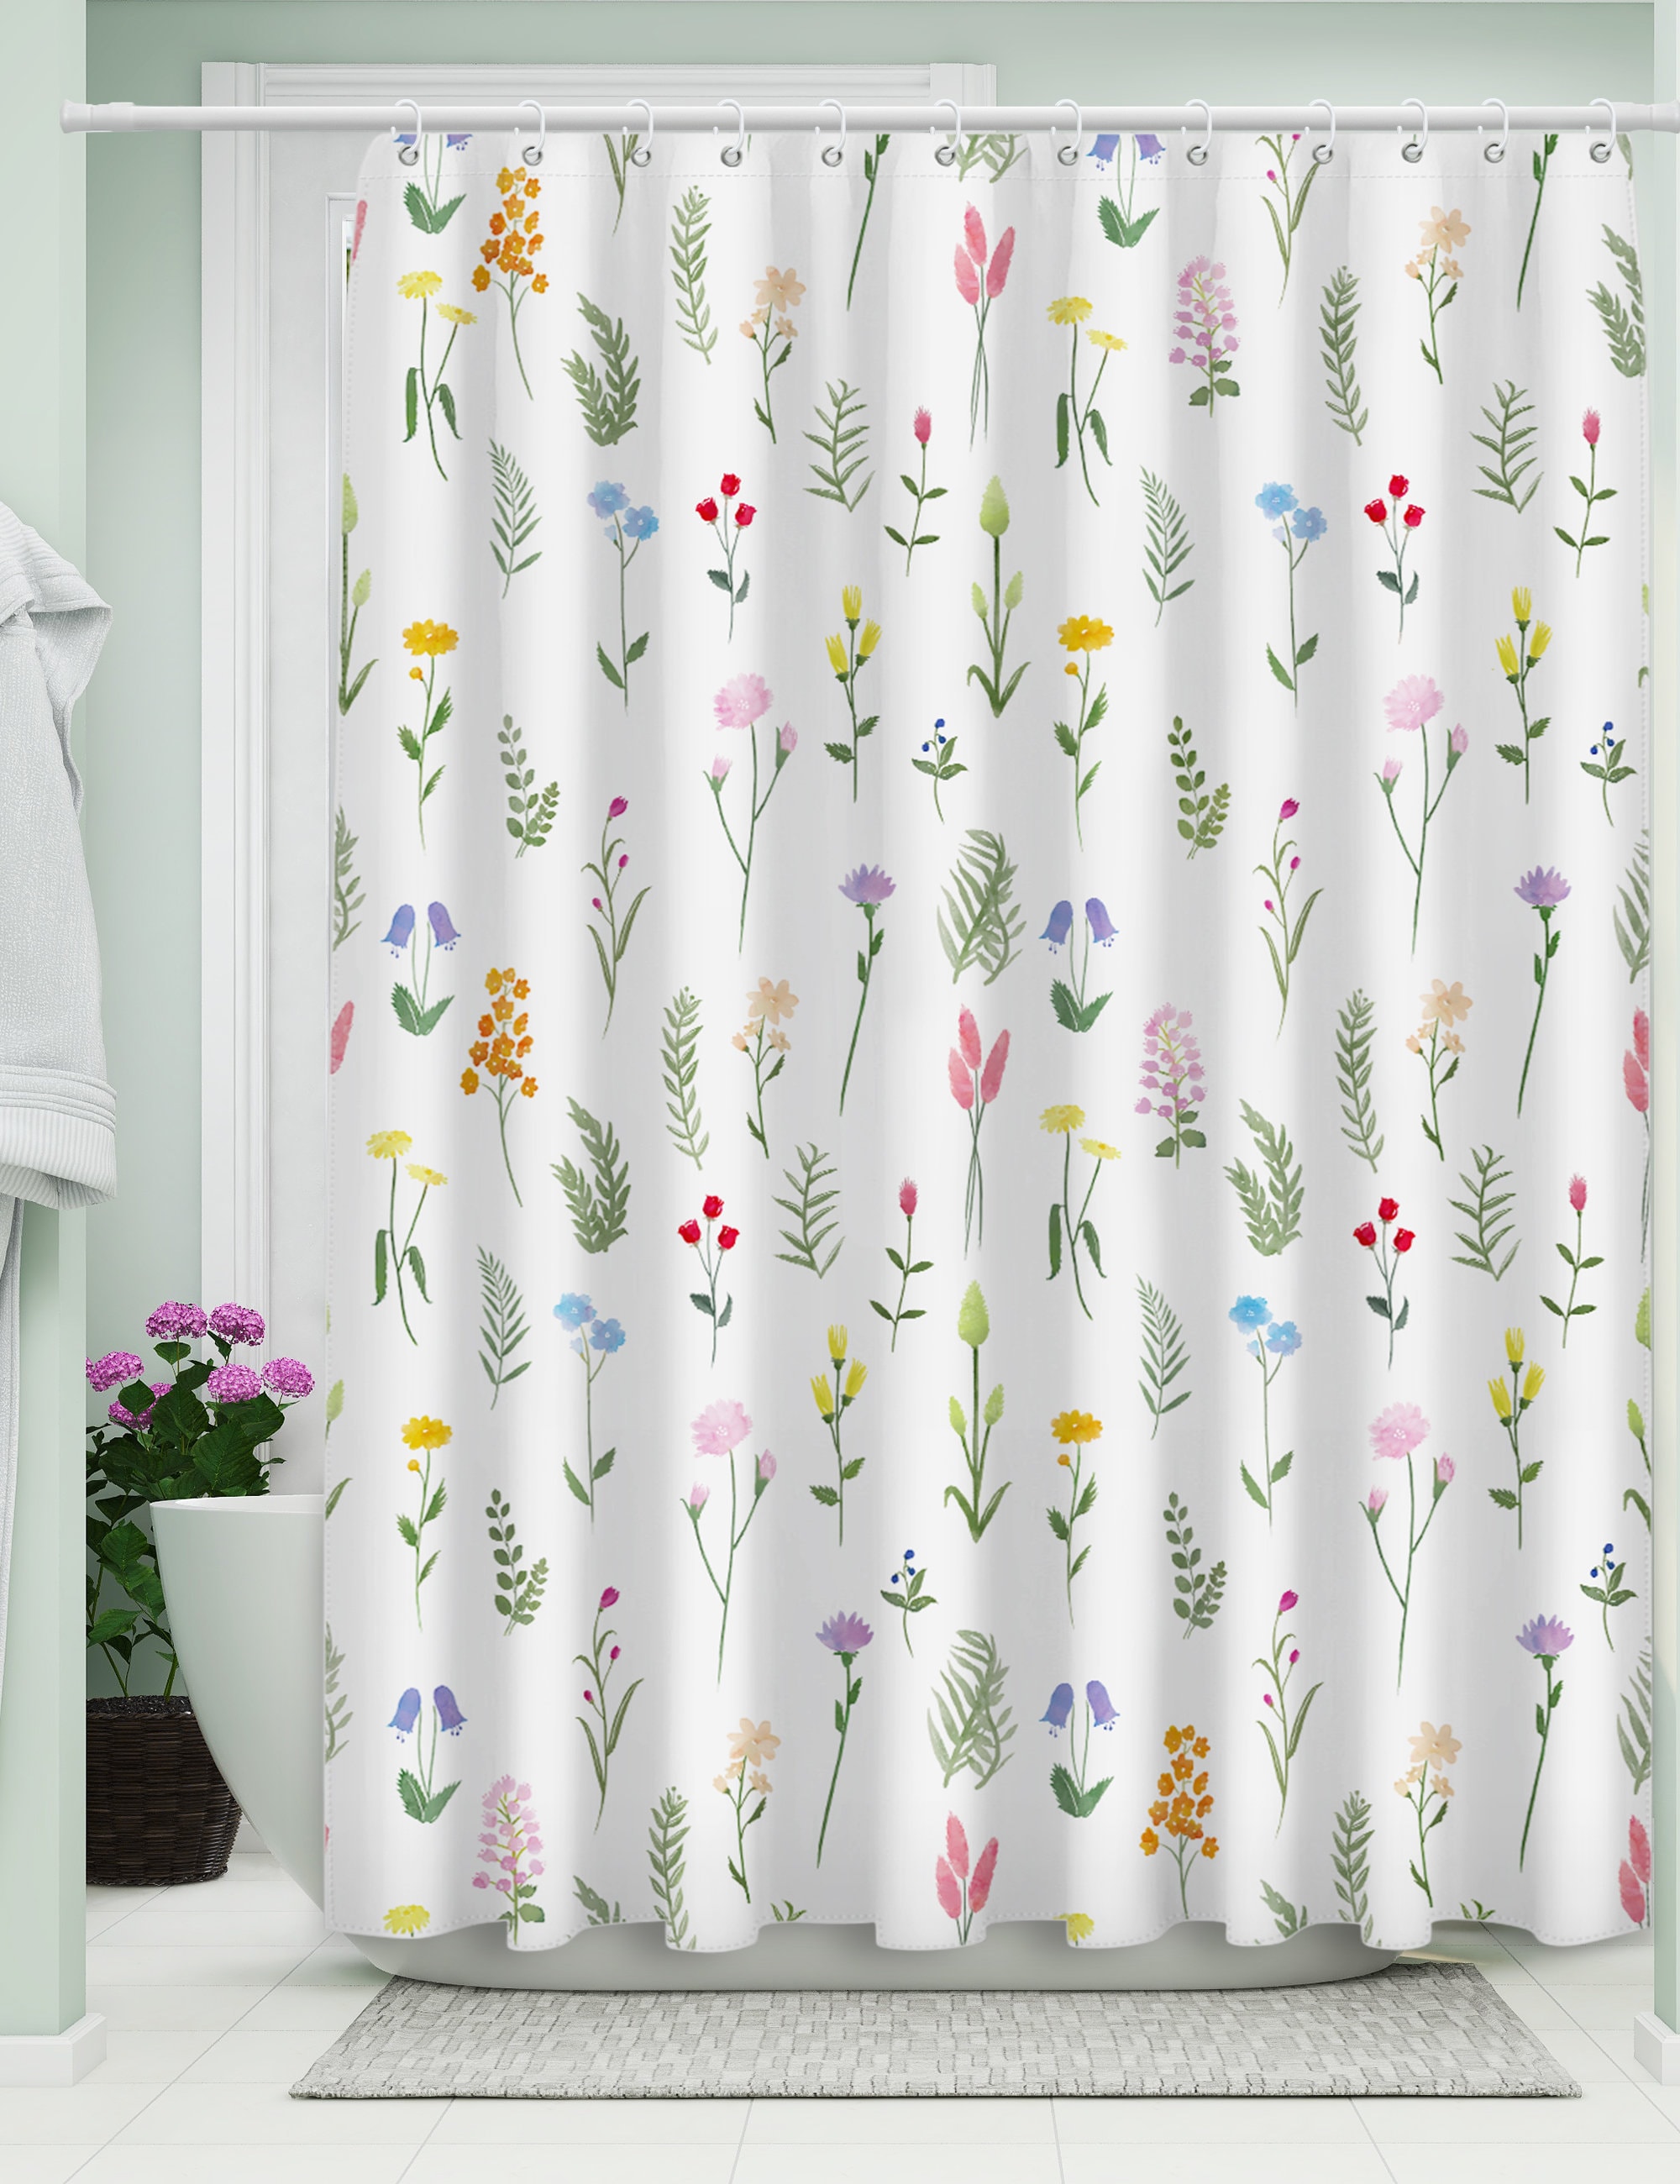 New Sabichi Bath Shower Curtain Peva Inc12 Hooks Baby Fish 180cm x 180cm 179593 